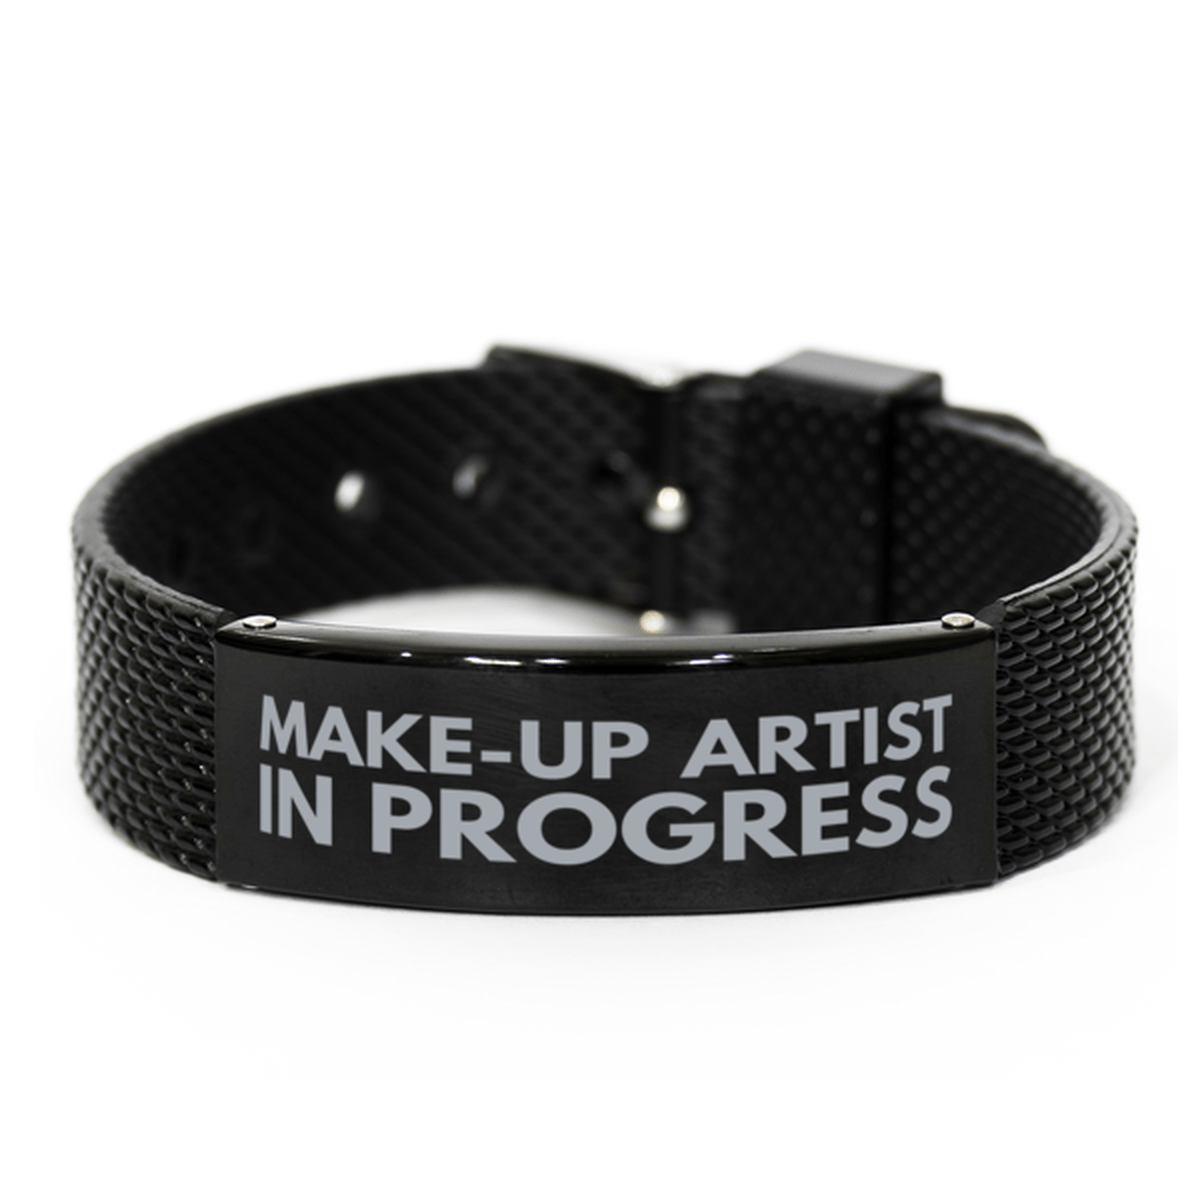 Inspirational Make-Up Artist Black Shark Mesh Bracelet, Make-Up Artist In Progress, Best Graduation Gifts for Students